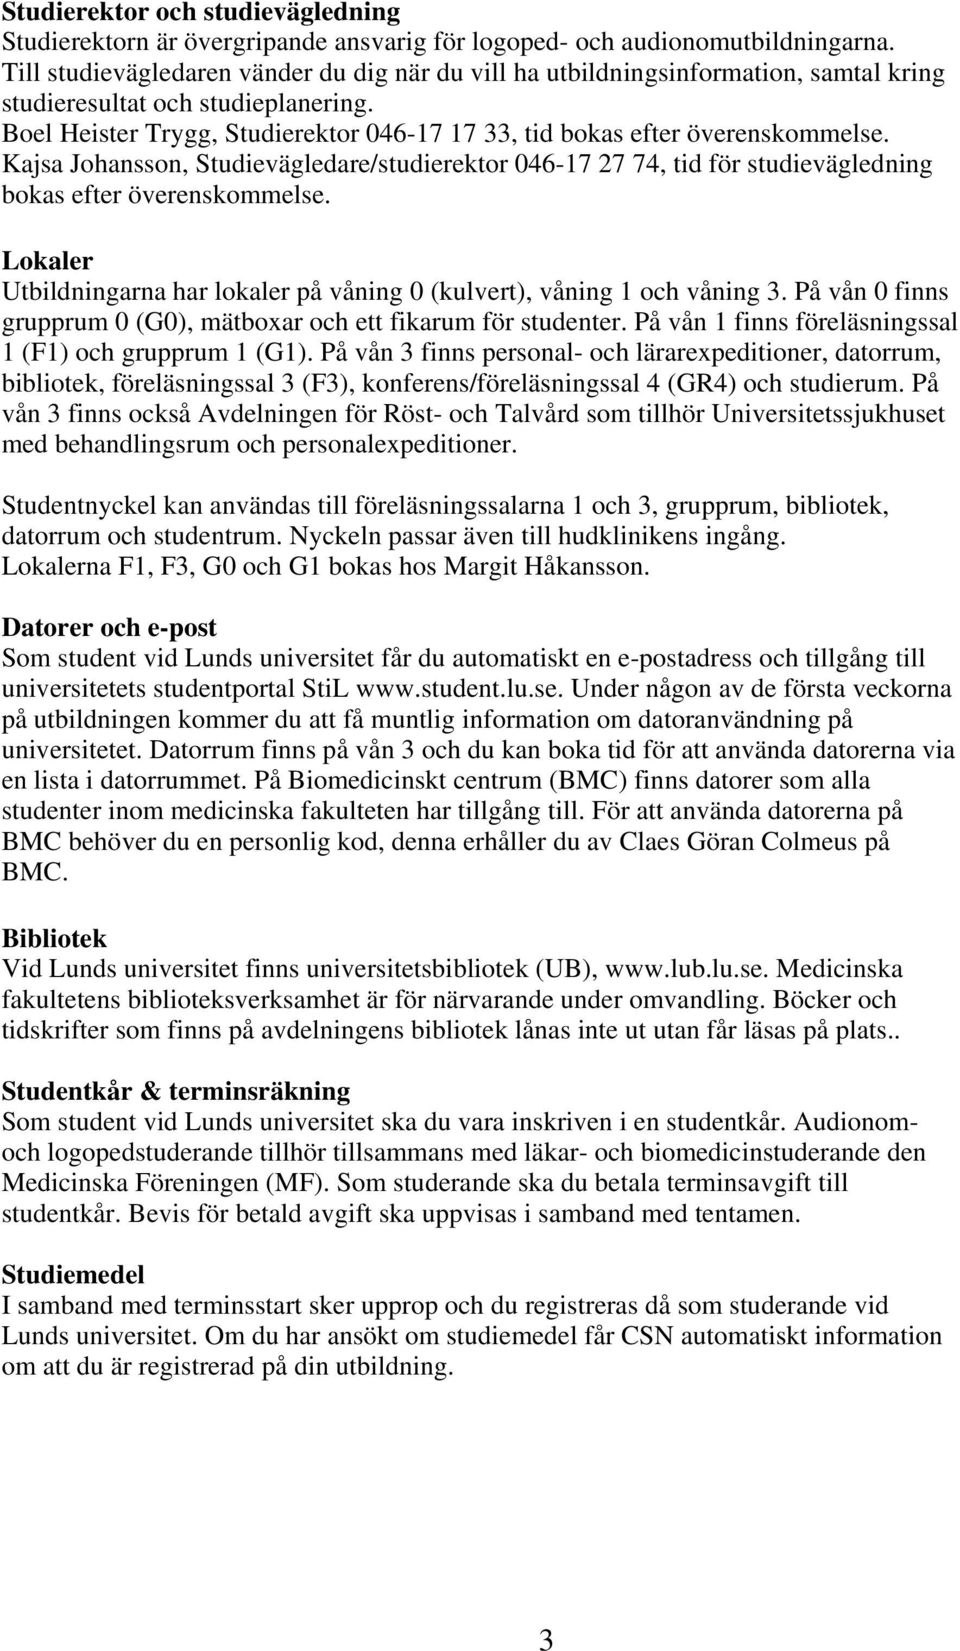 Boel Heister Trygg, Studierektor 046-17 17 33, tid bokas efter överenskommelse. Kajsa Johansson, Studievägledare/studierektor 046-17 27 74, tid för studievägledning bokas efter överenskommelse.